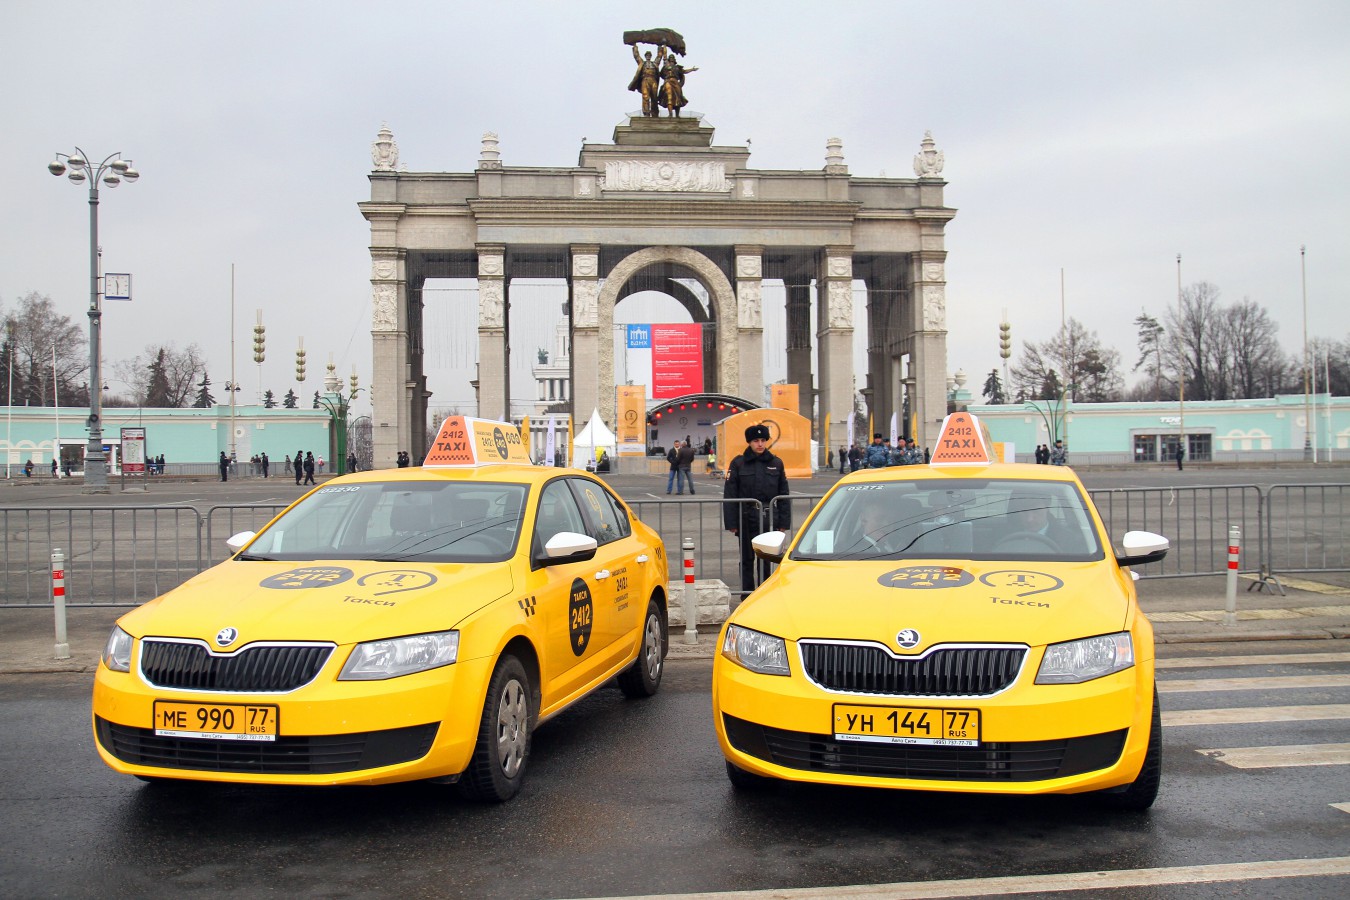 taxi ở Nga